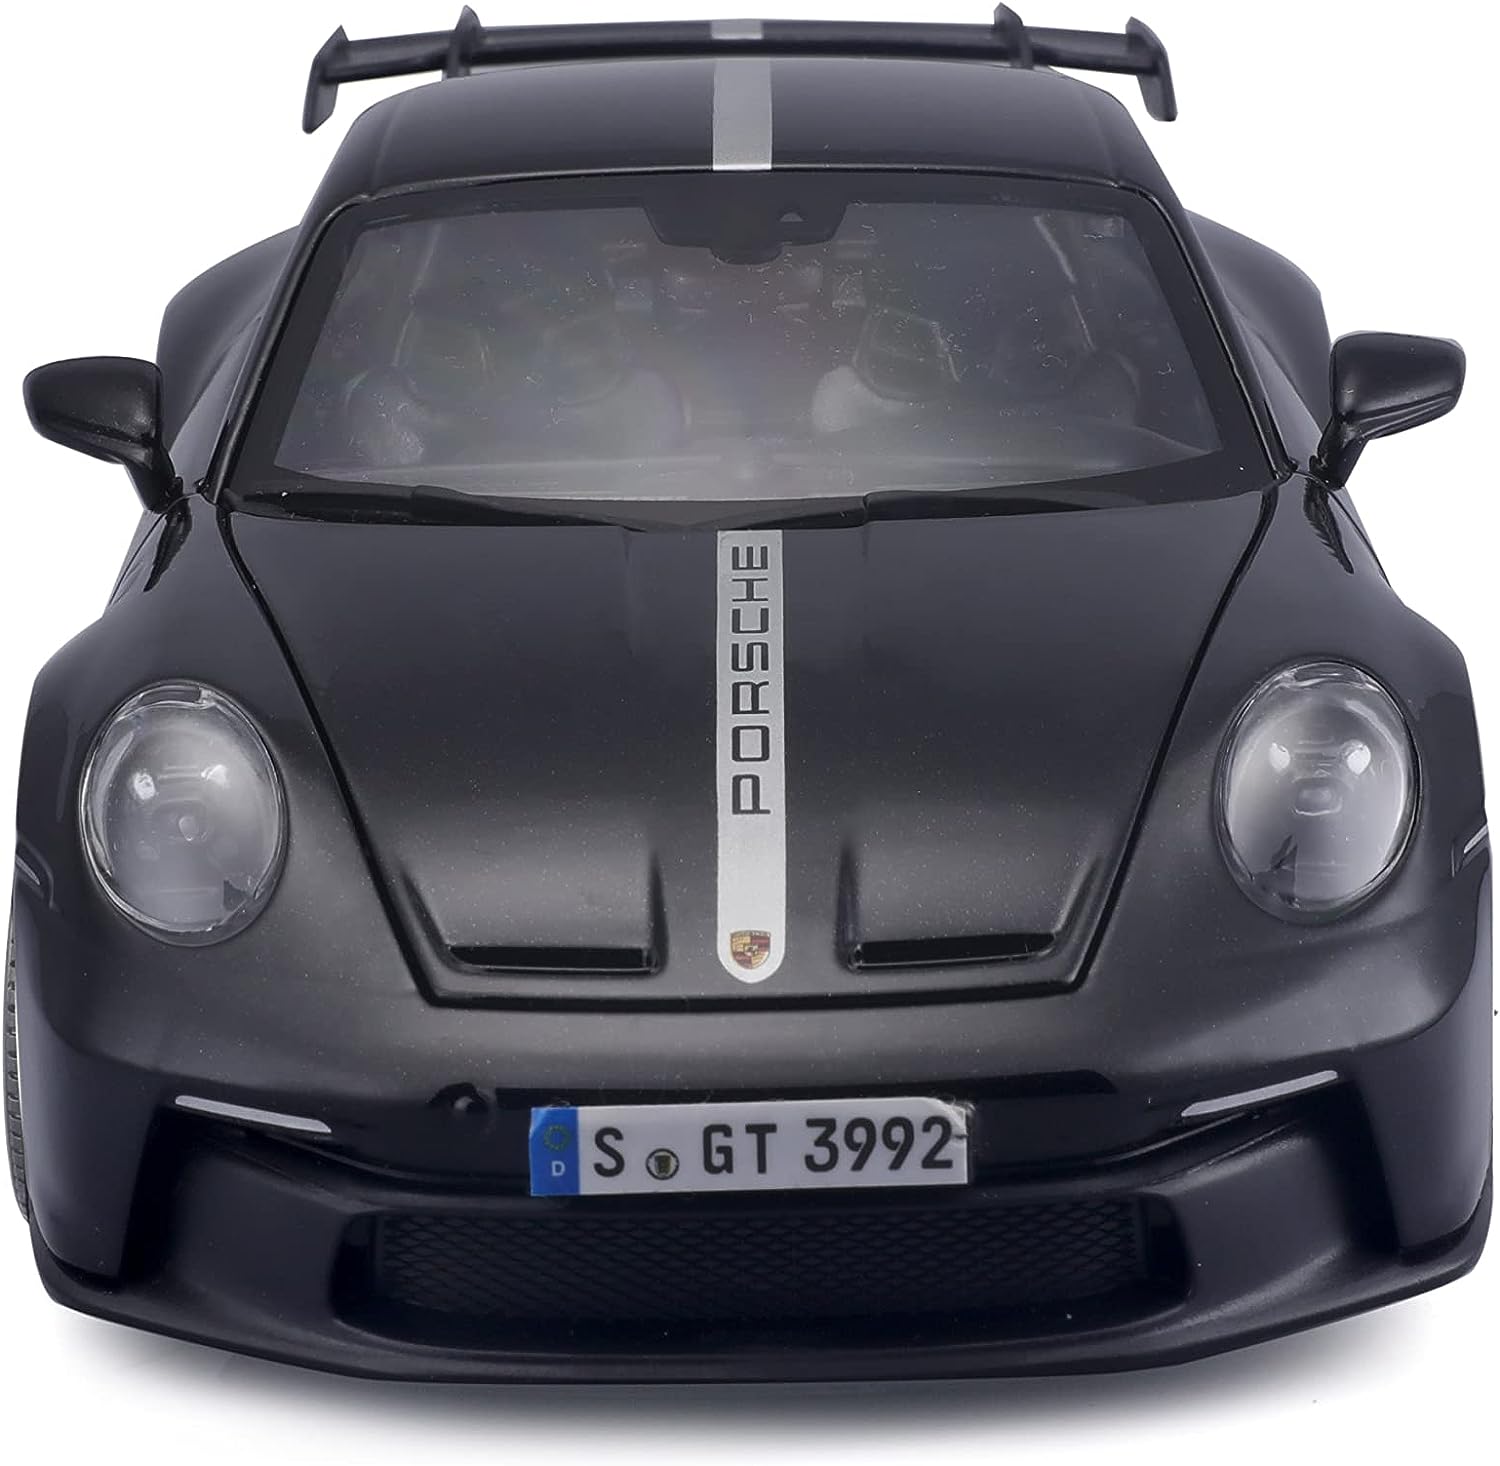 36458 Maisto - 2022 Porsche 911 GT3 - 1:18 - nero